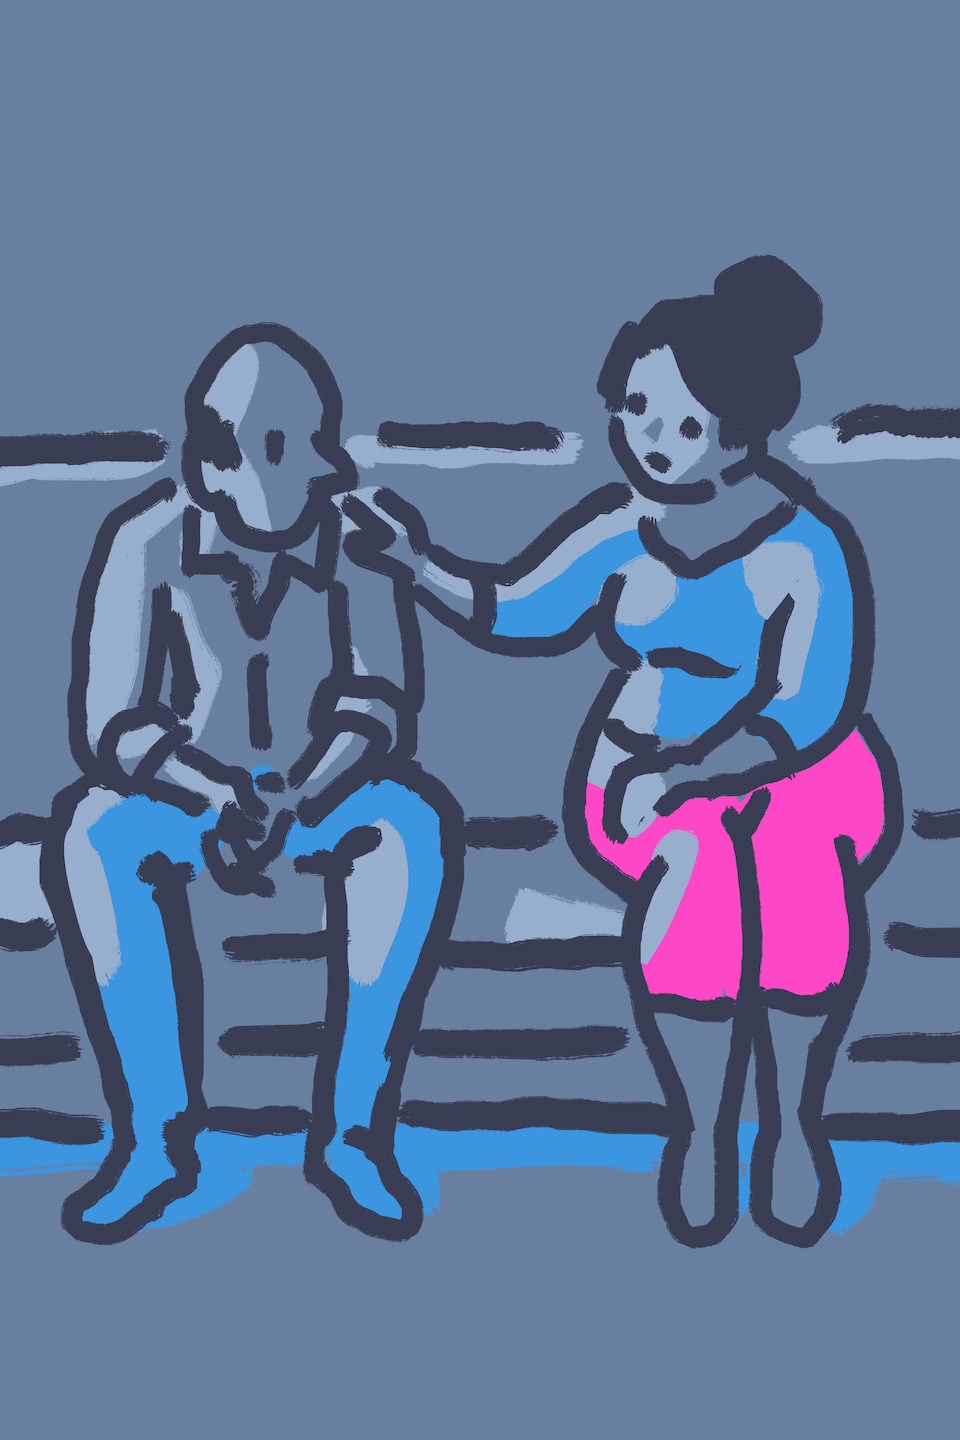 En dessin : une femme et un homme assis sur un divan. La femme met sa main sur l'épaule de l'homme.